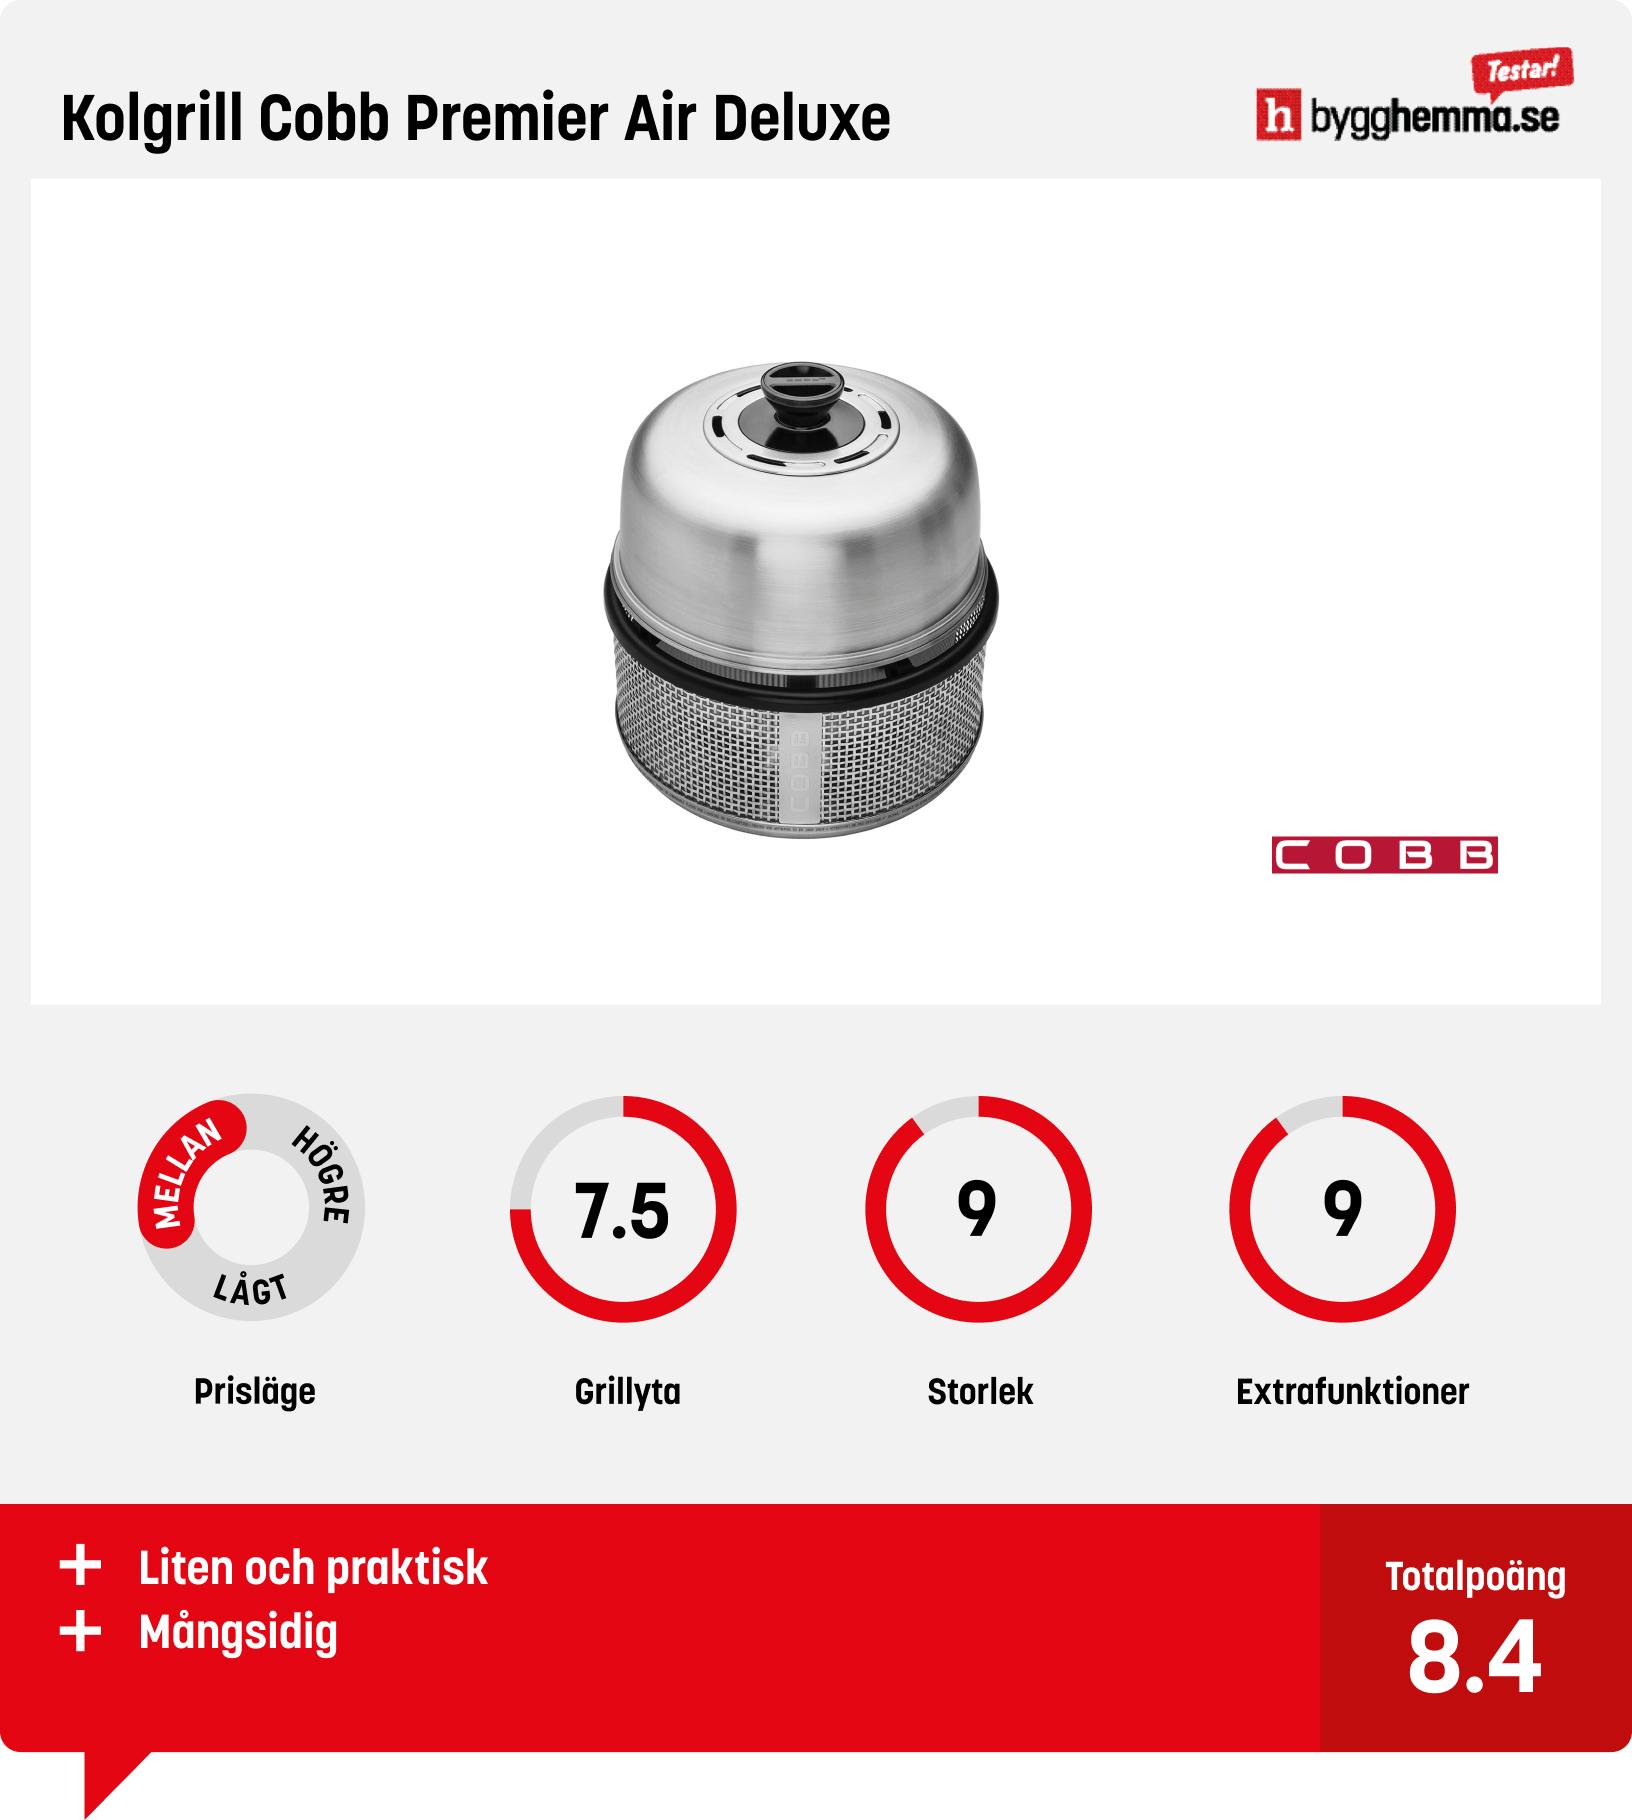 Bärbar kolgrill bäst i test -  Kolgrill Cobb Premier Air Deluxe